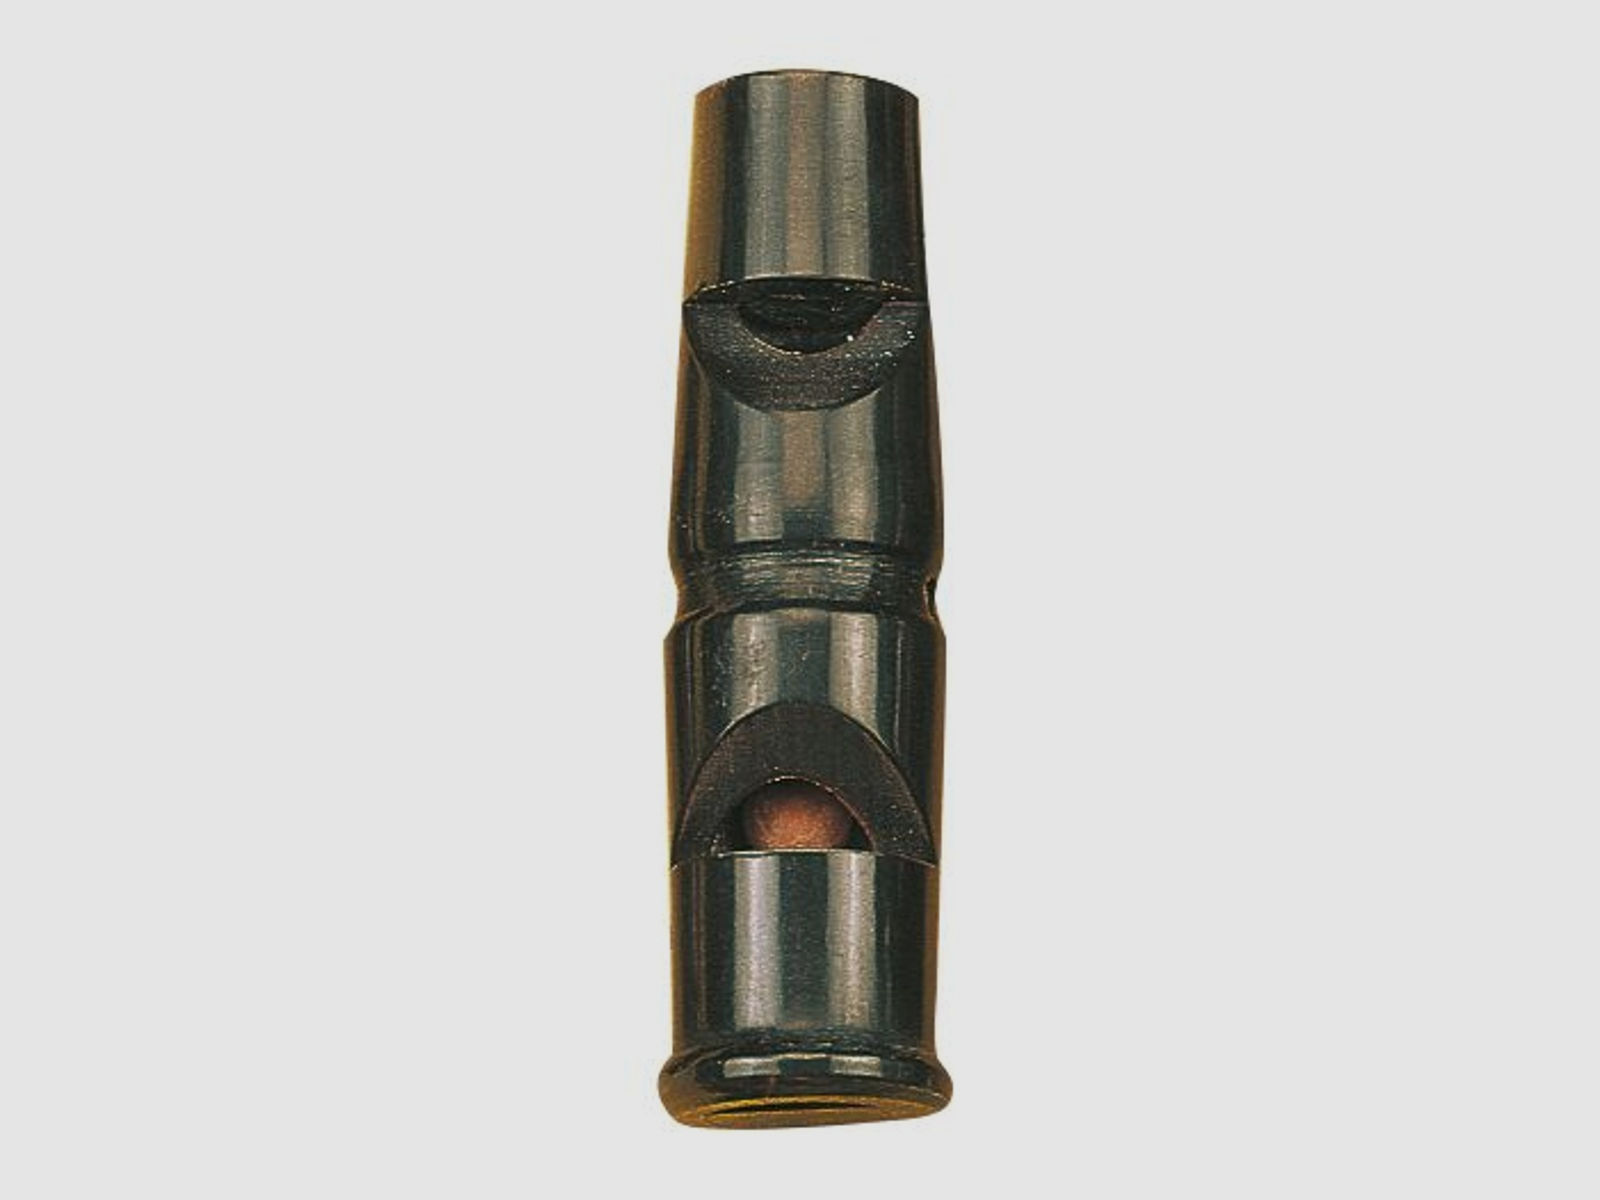 Dressur-Doppelpfeife Büffelhorn – 60 mm